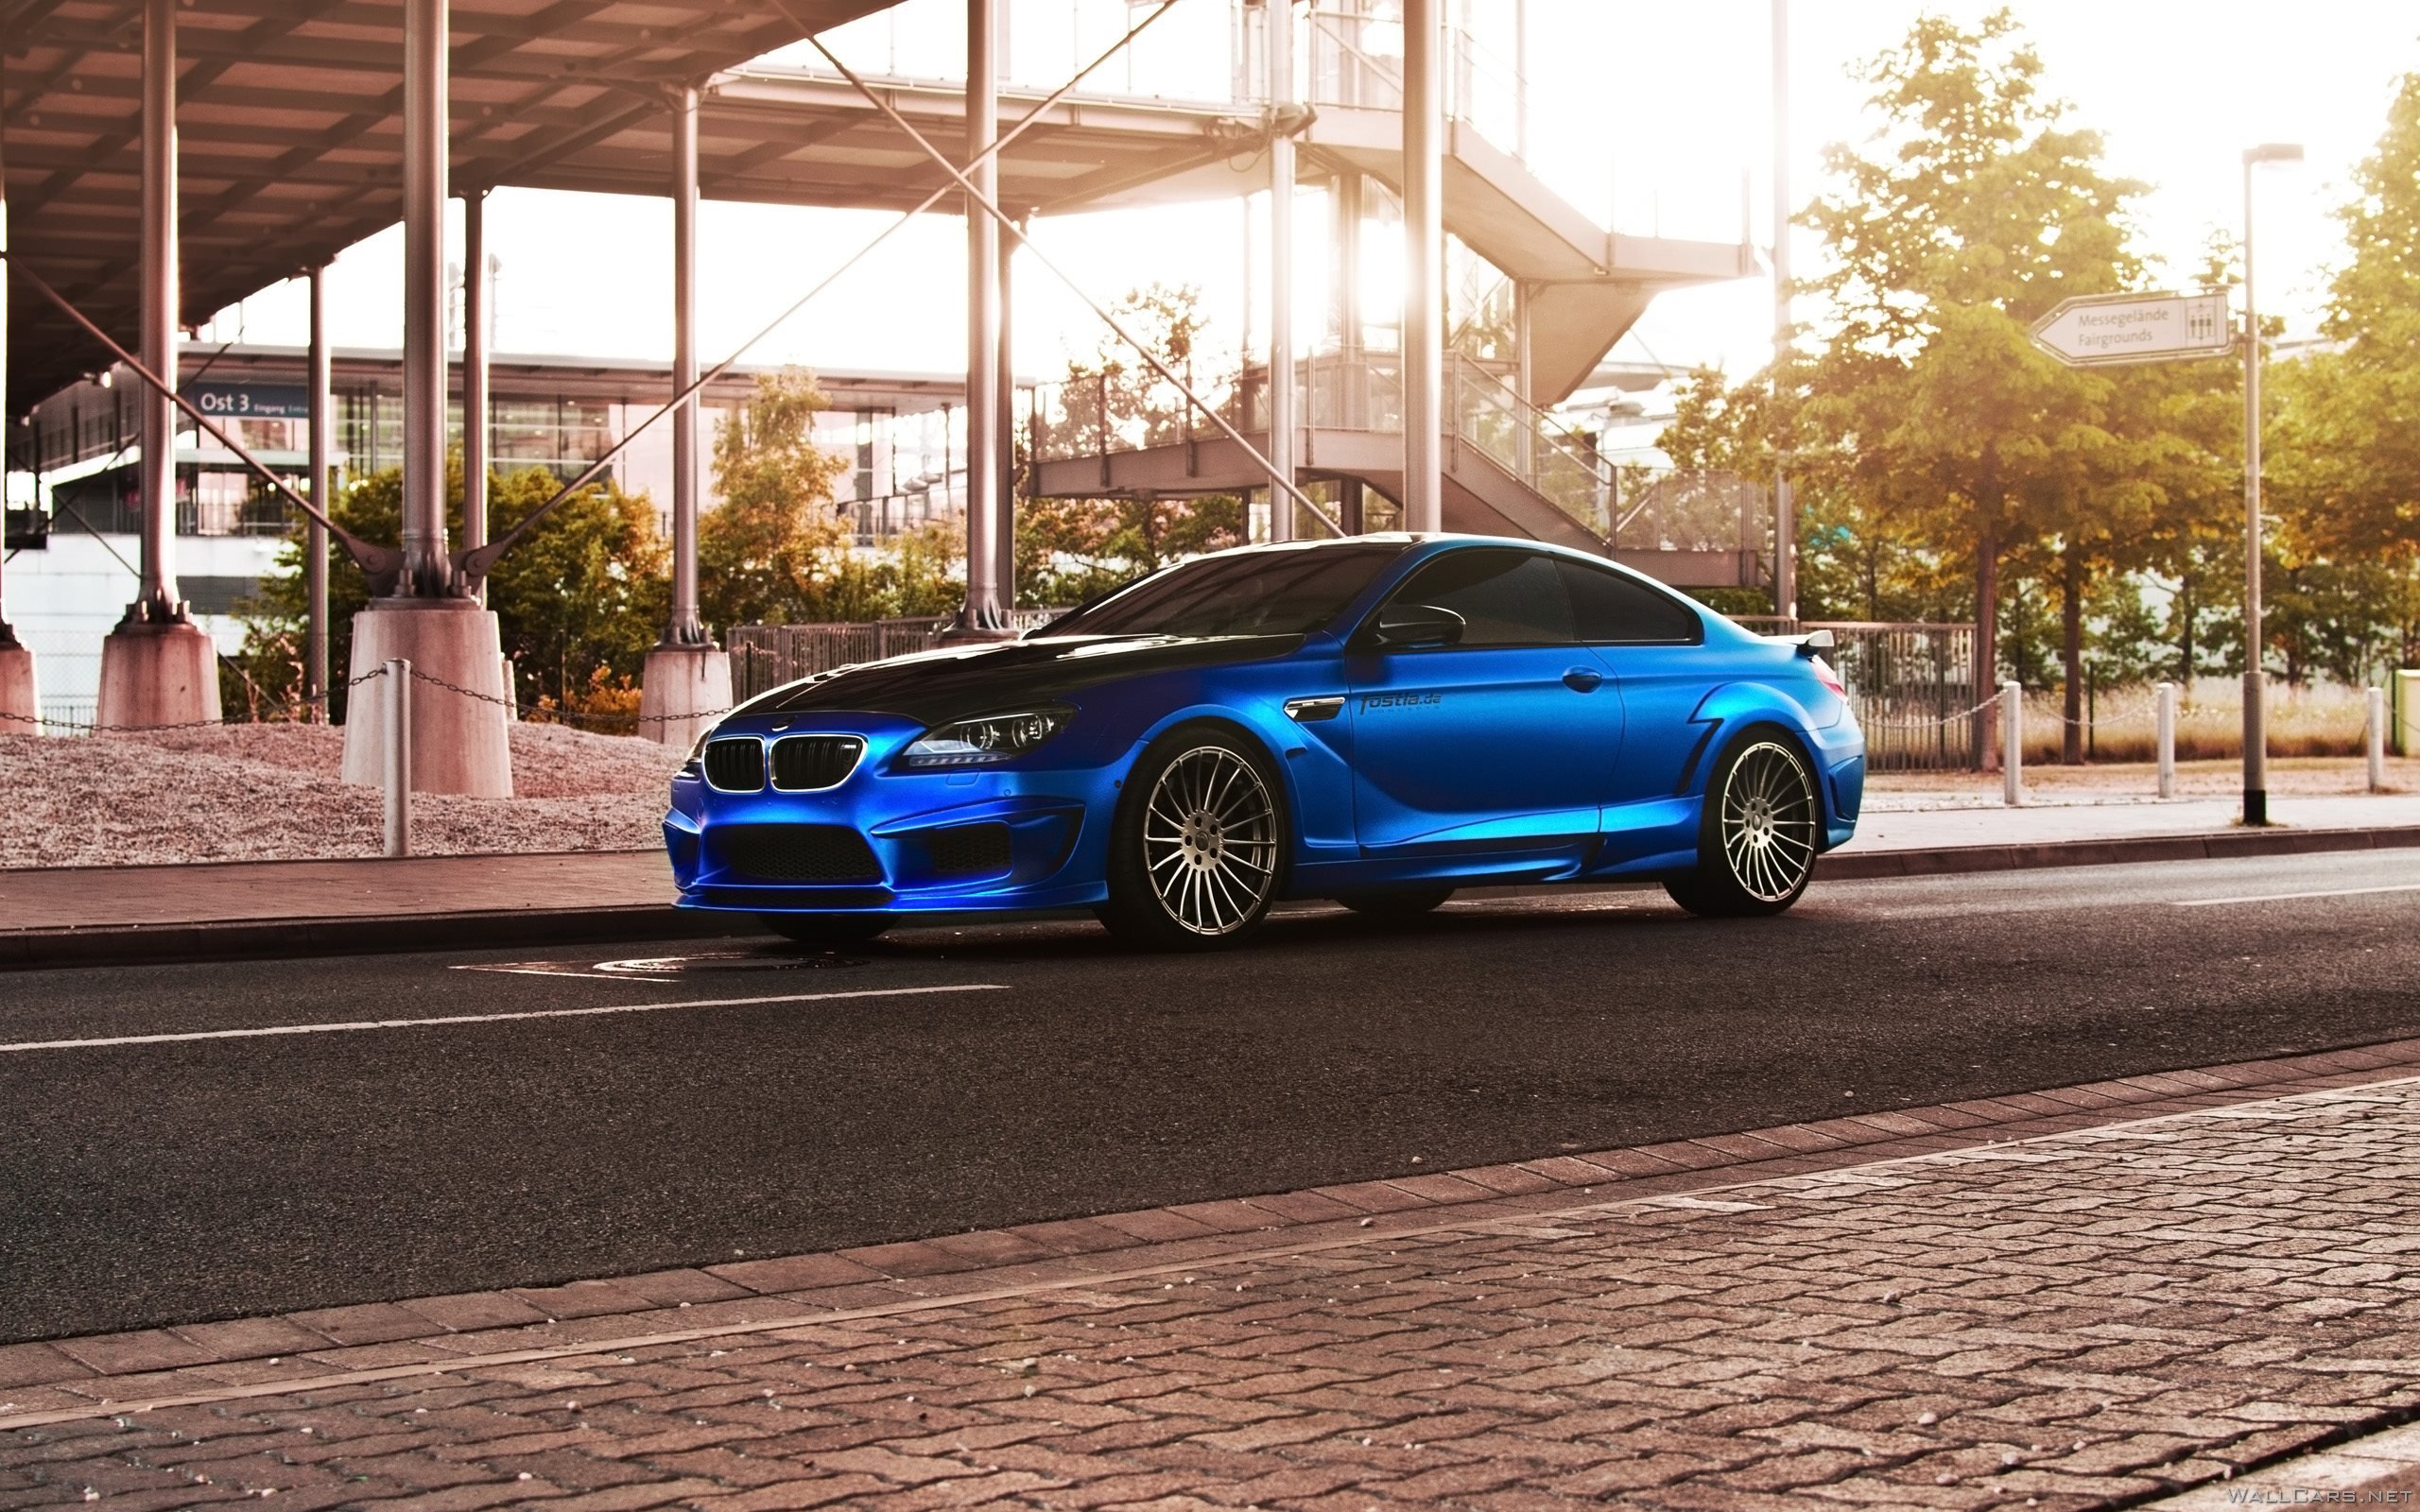 Синий BMW M6 Hamann, 2015, цвет, диски, купе, город, архитектура, обвесы, пороги, бампер